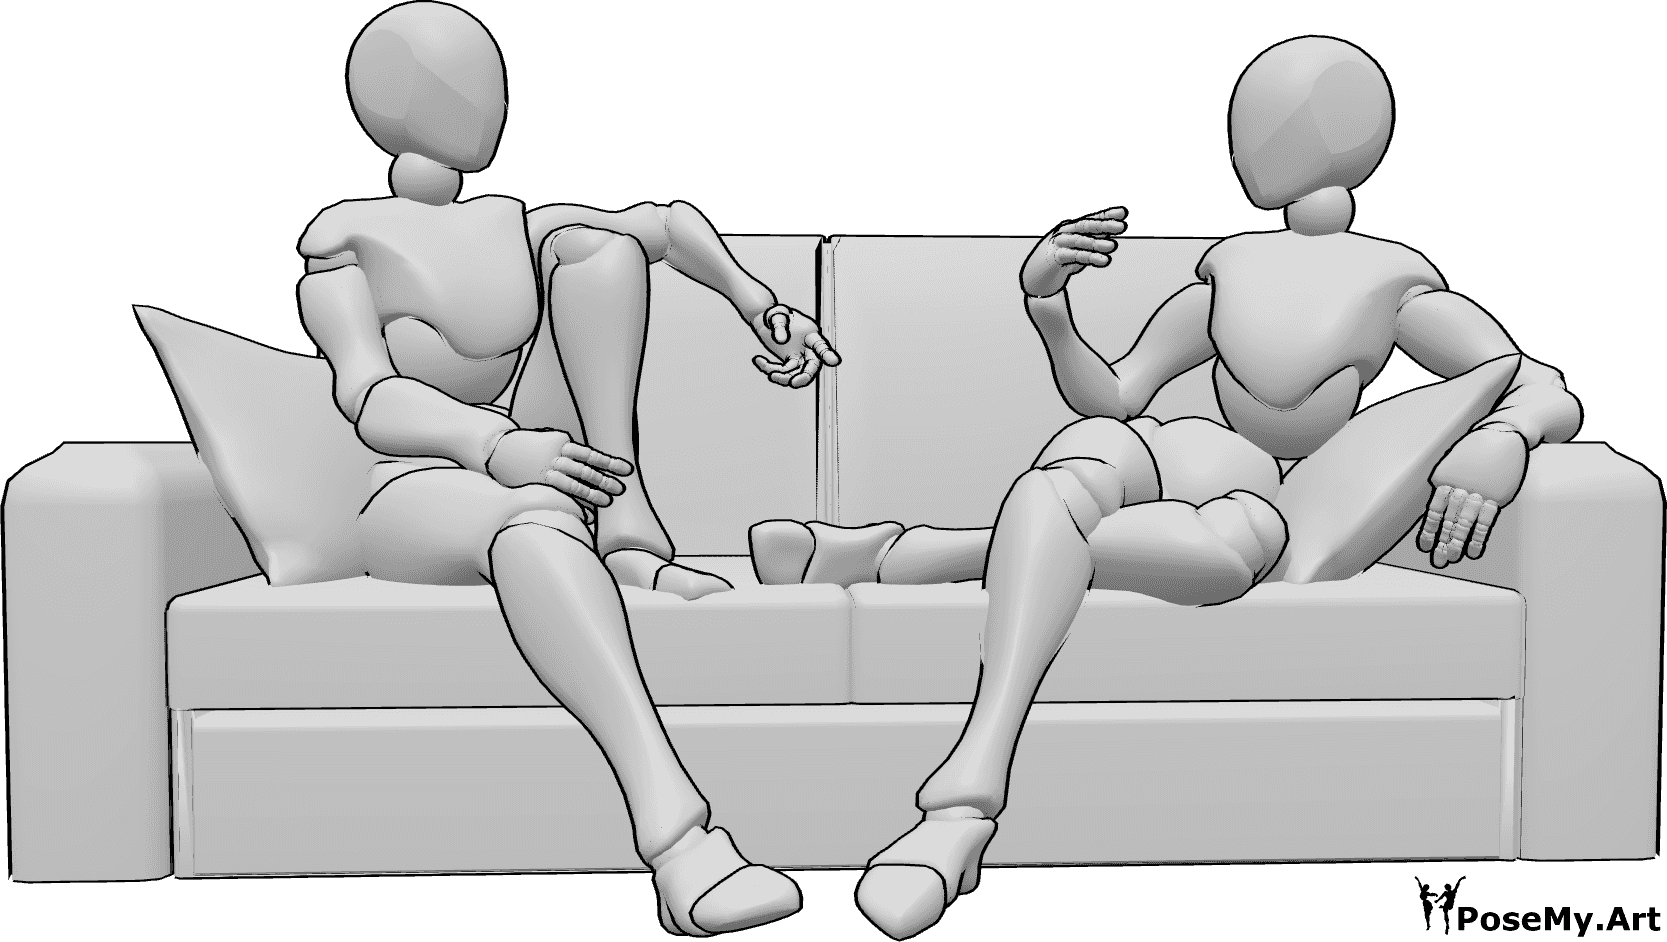 Posen-Referenz- Zwei Frauen in sitzender Pose - Zwei Frauen sitzen gemütlich auf der Couch und unterhalten sich